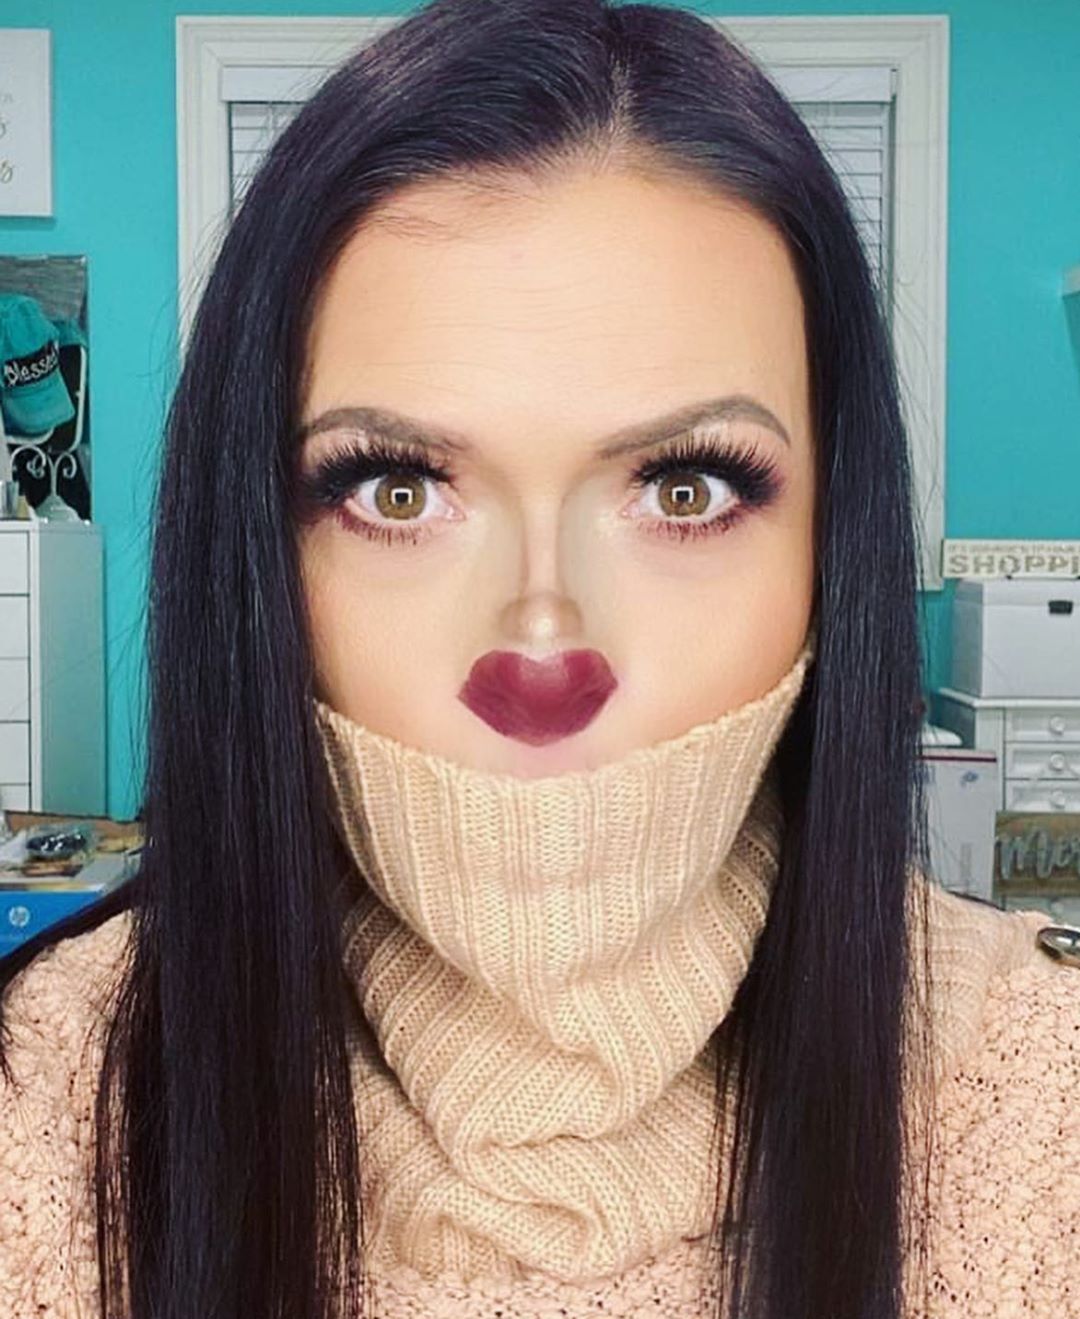 Рот на носу: странная оптическая иллюзия на лице стала трендом в сети